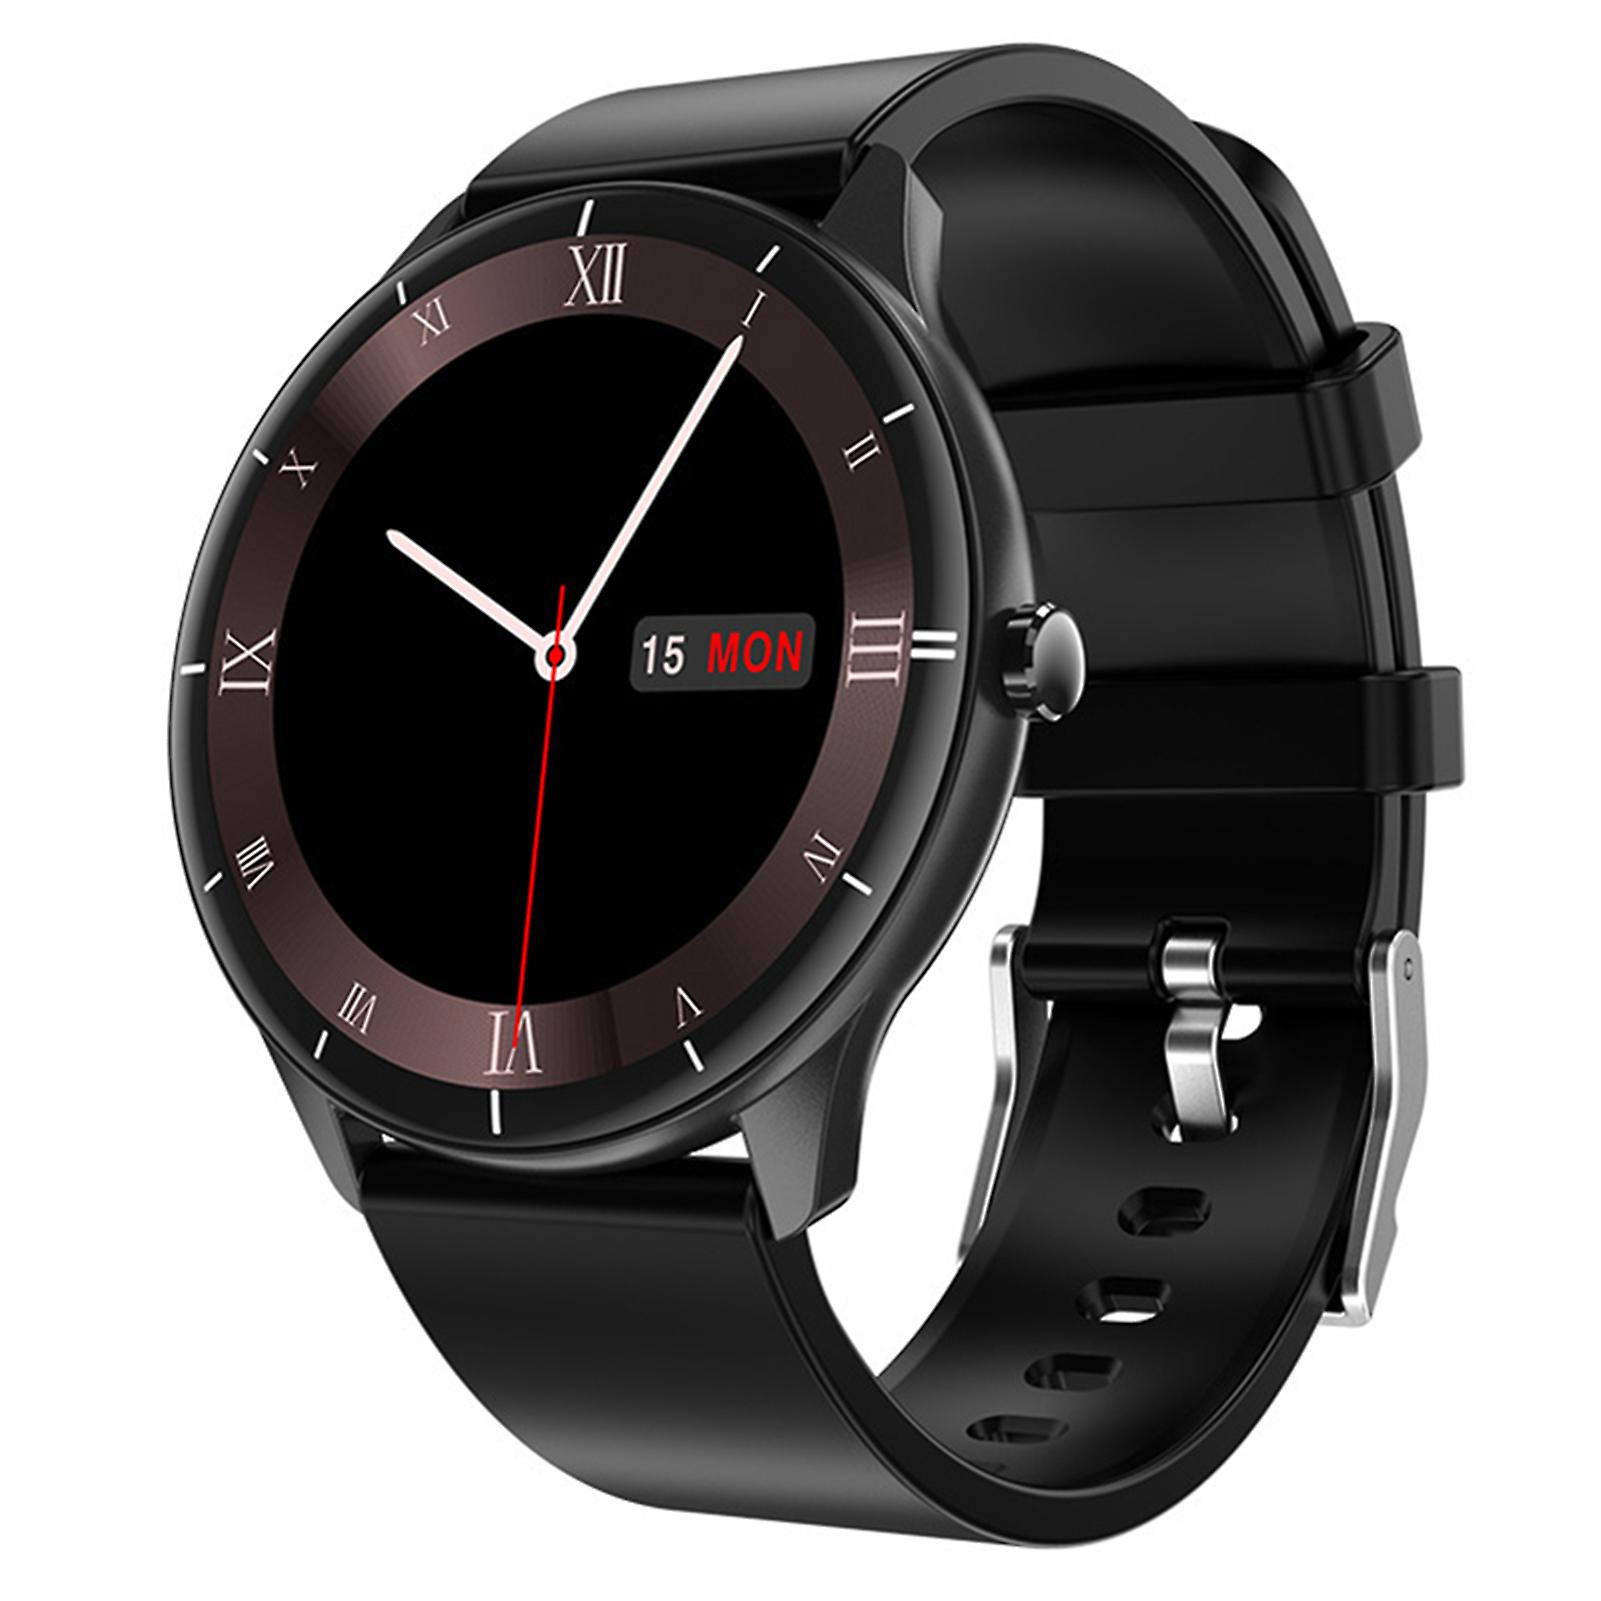 Chytré hodinky / 1,28" / 240 x 240 px / Bluetooth / GPS / černá